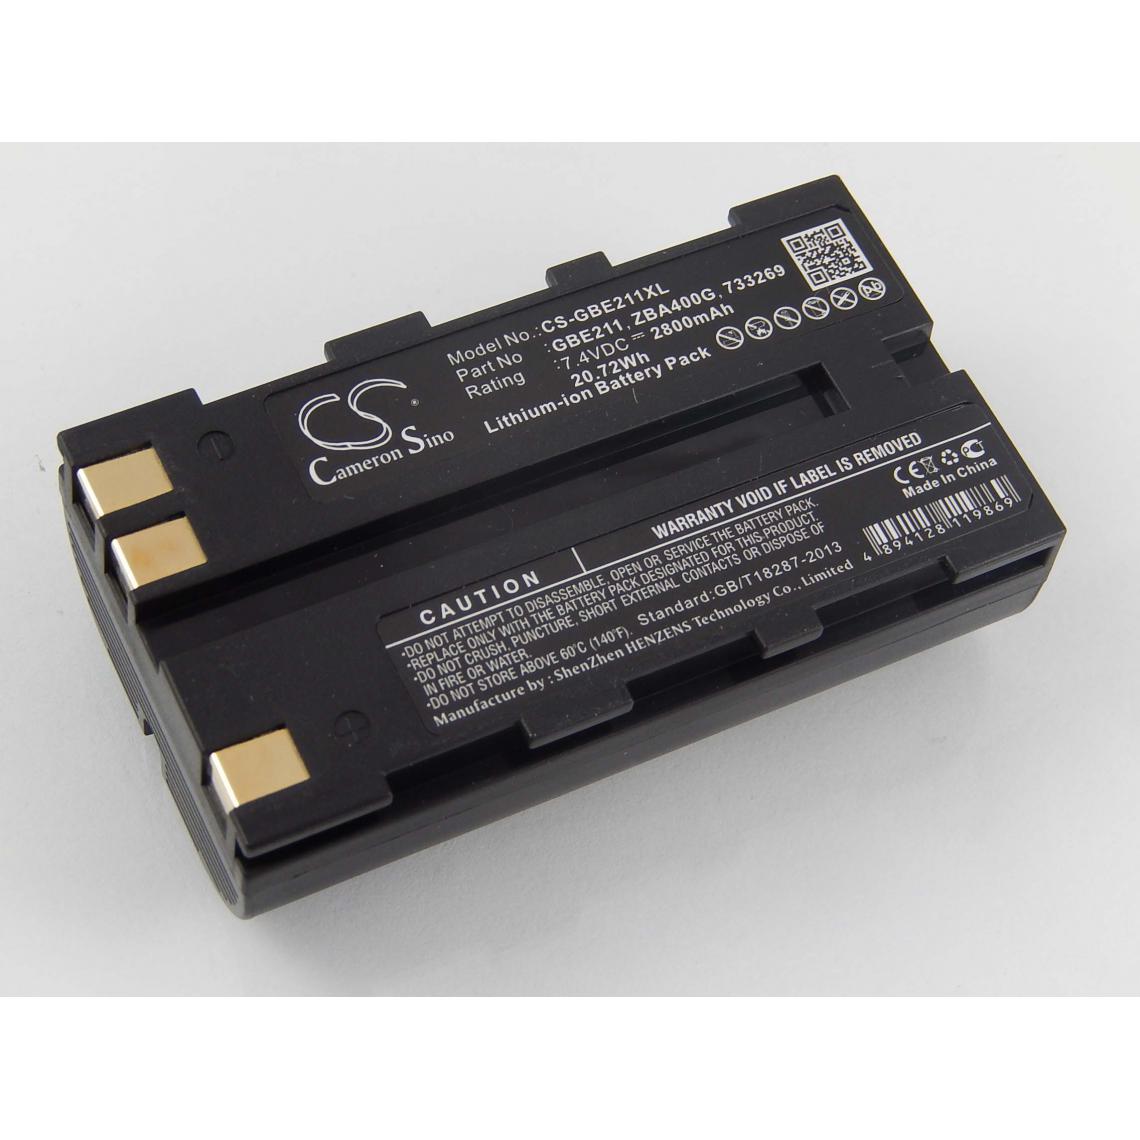 Vhbw - vhbw Batterie compatible avec Geomax Zoom 20, Zoom 30, Zoom 35 dispositif de mesure laser, outil de mesure (2800mAh, 7,4V, Li-ion) - Piles rechargeables